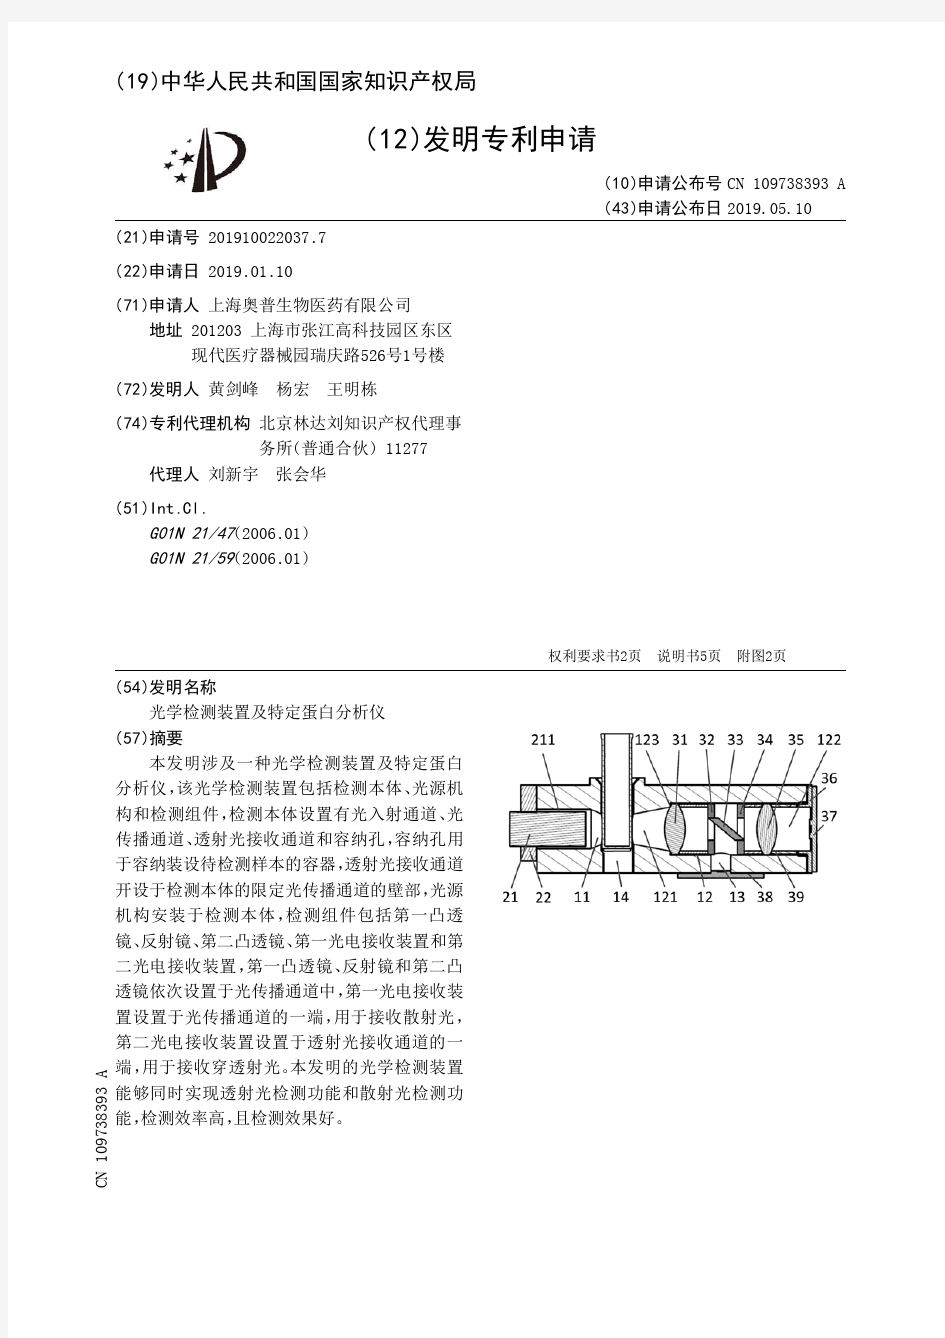 【CN109738393A】光学检测装置及特定蛋白分析仪【专利】